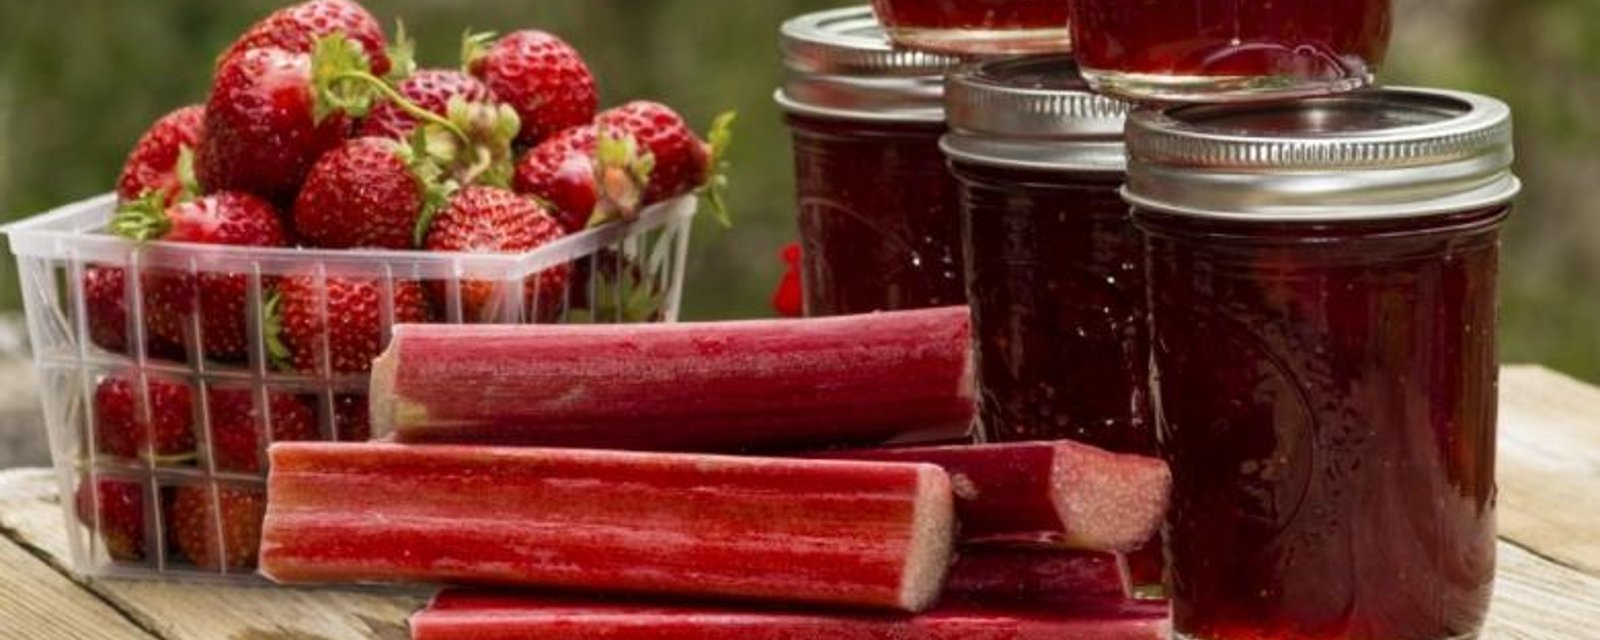  Confiture à la rhubarbe et aux fraises...en 3 ingrédients seulement